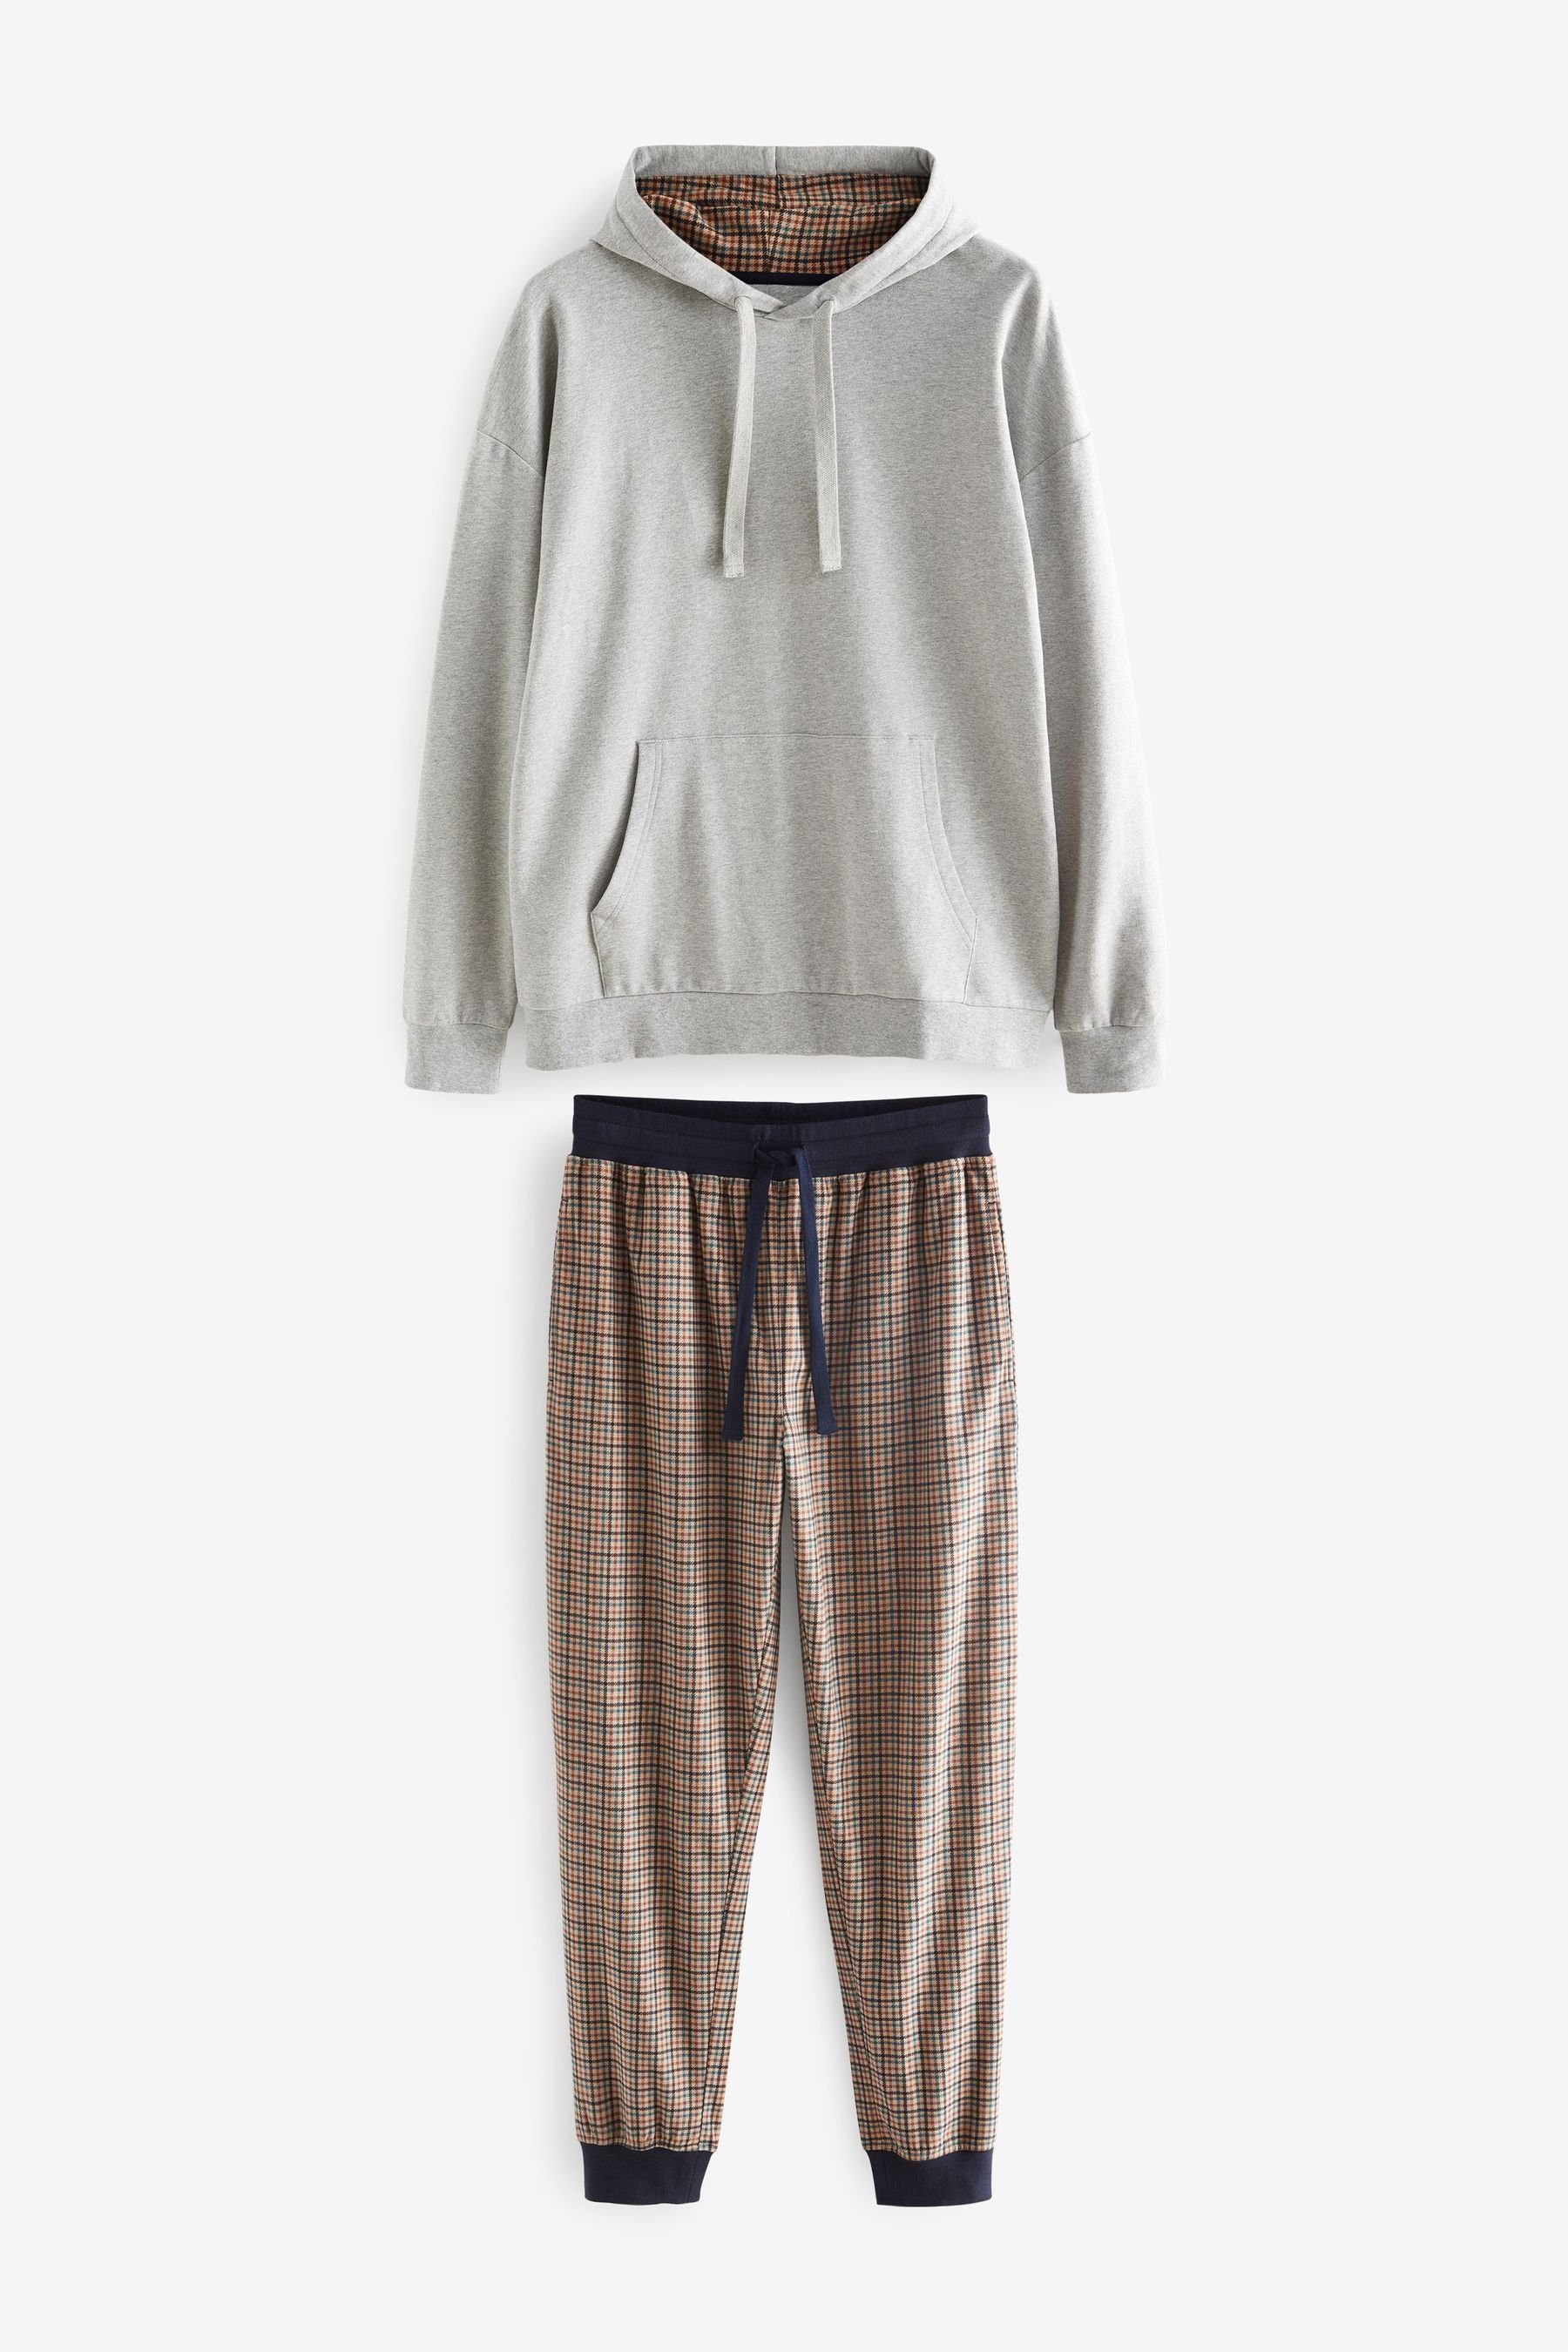 Schlafanzug Hooded Kuscheliger Next MotionFlex Check Pyjama Bündchen Grey/Neutral (2 mit tlg)